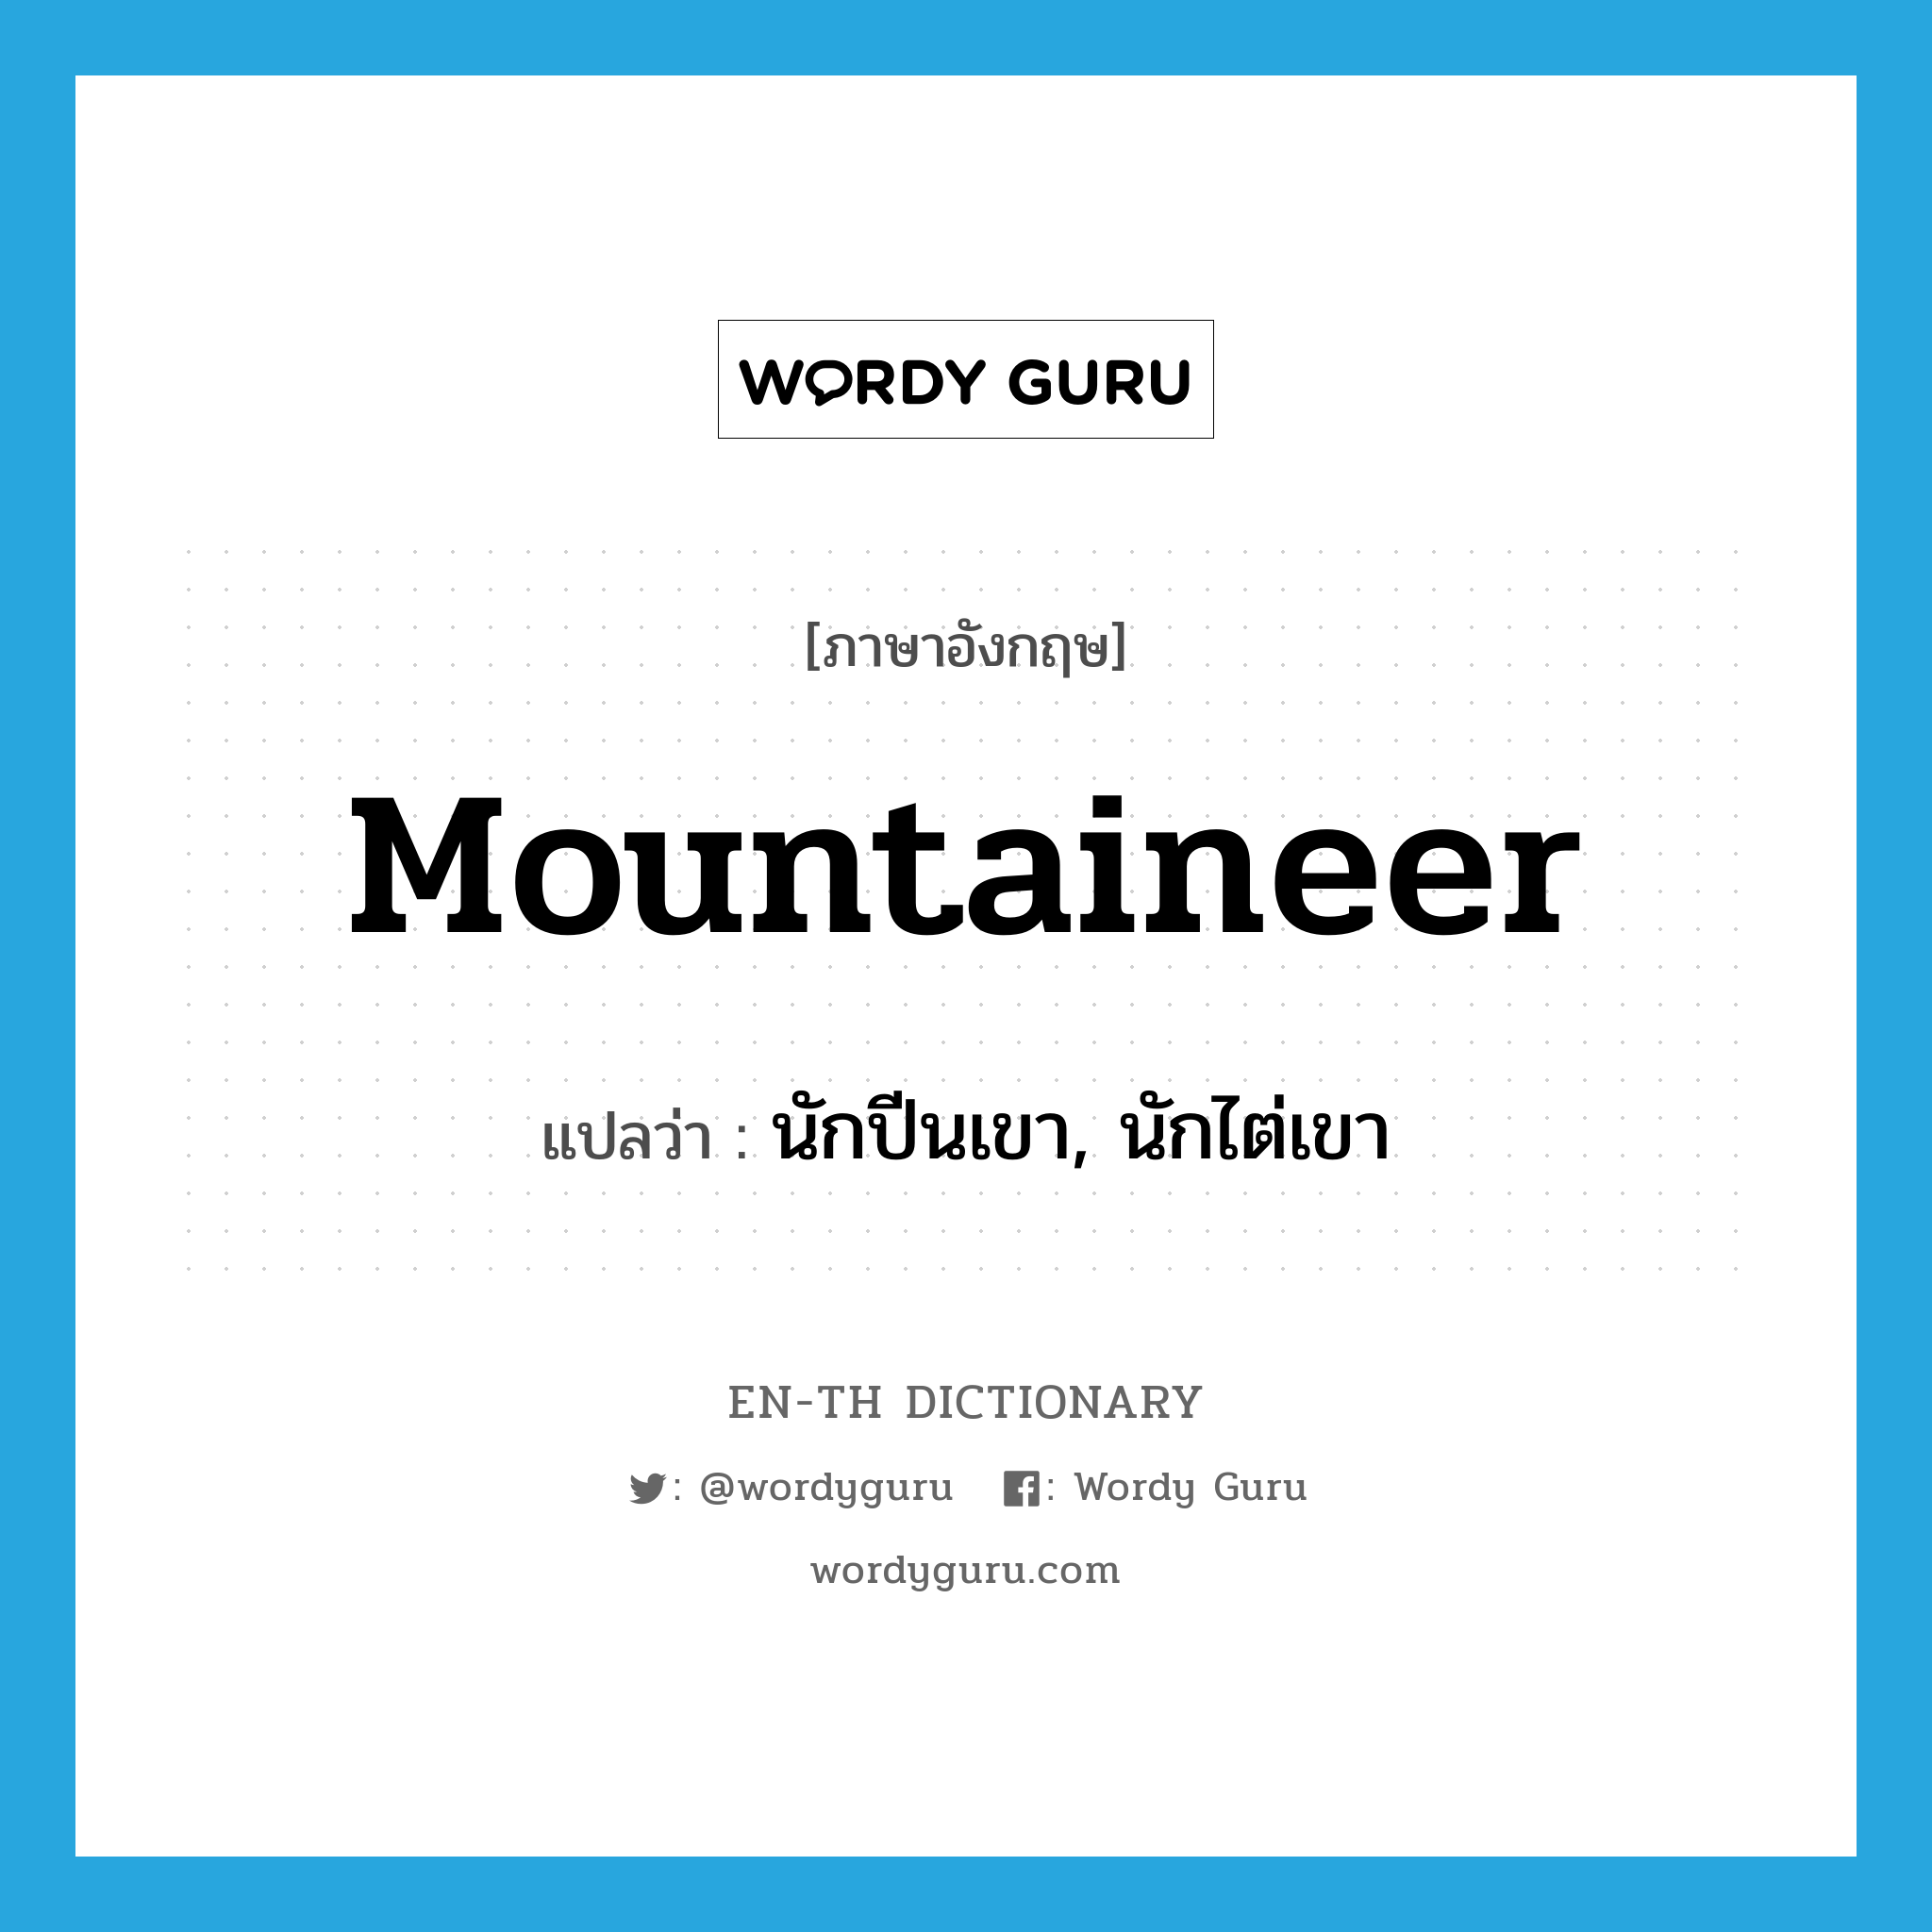 นักปีนเขา, นักไต่เขา ภาษาอังกฤษ?, คำศัพท์ภาษาอังกฤษ นักปีนเขา, นักไต่เขา แปลว่า mountaineer ประเภท N หมวด N